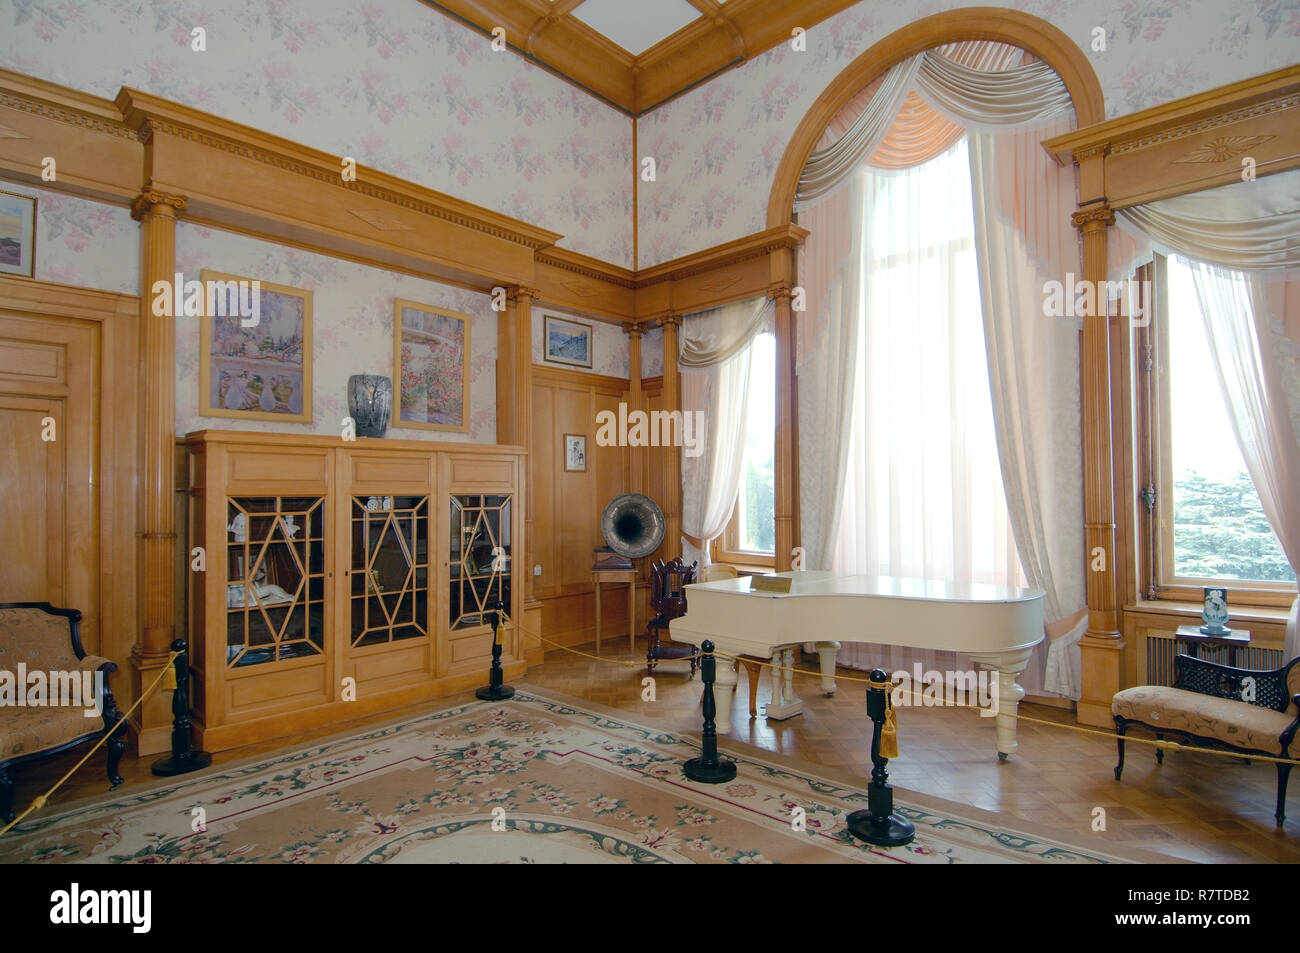 Salle de musique, Palais de Livadia, près de Yalta, Crimée, Ukraine Banque D'Images